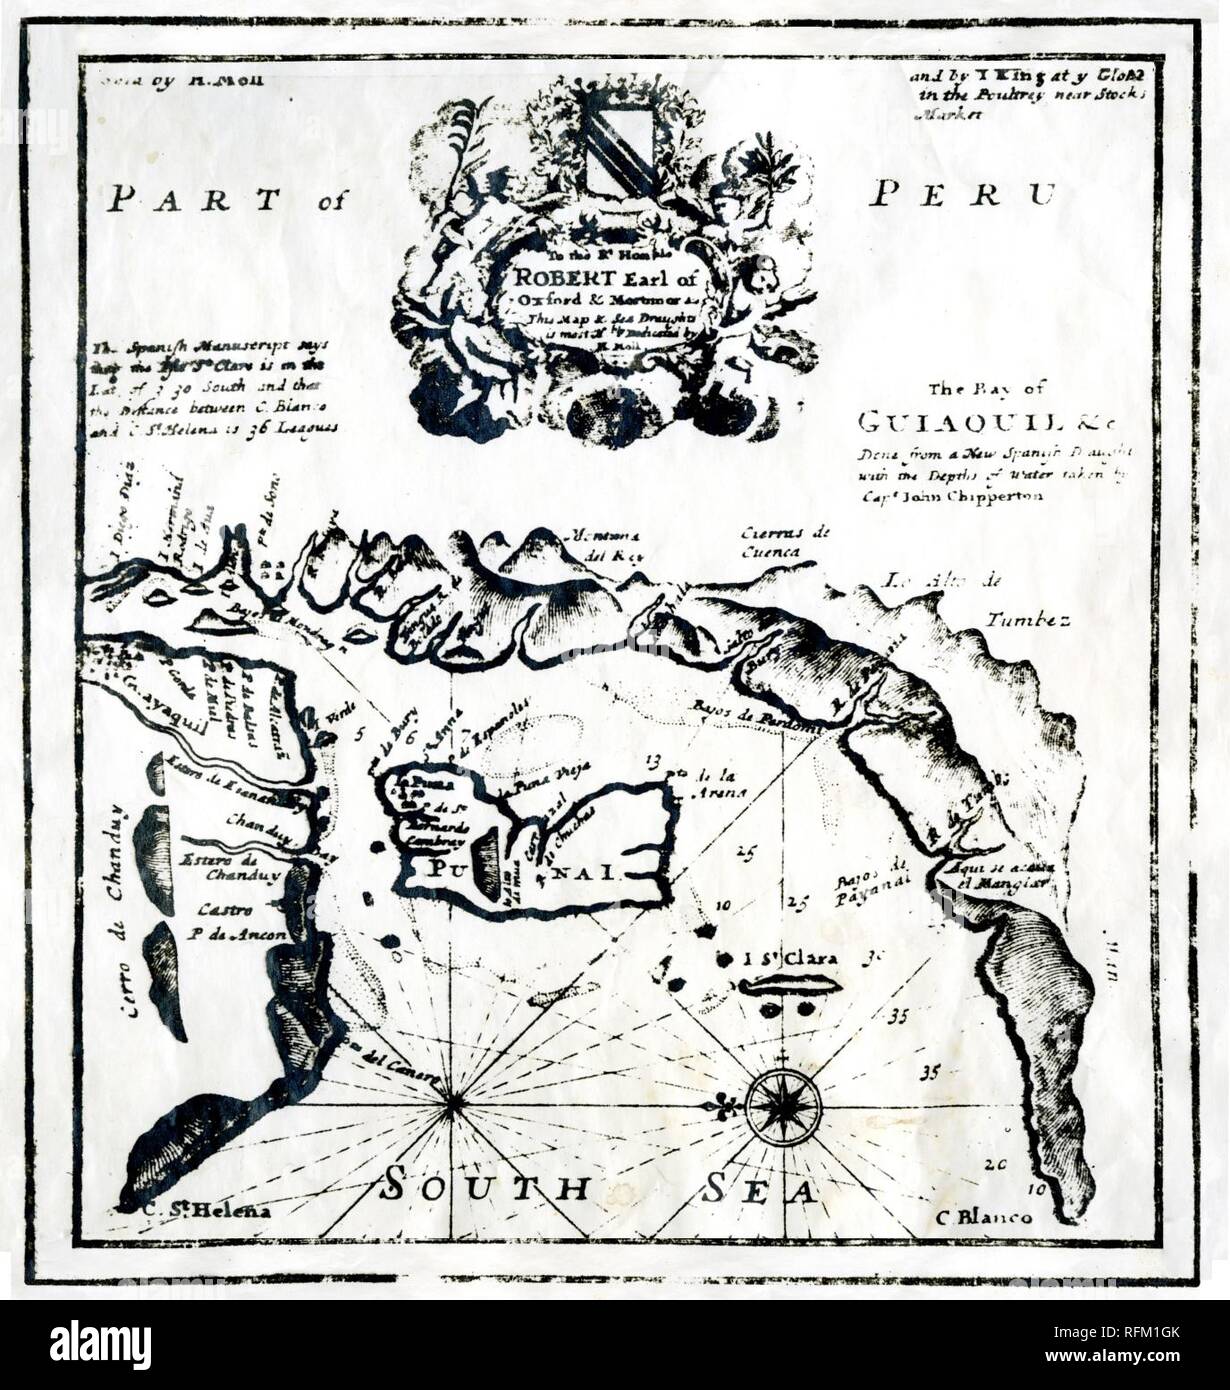 Bahía de Guayaquil según el pirata John Clipperton y dedicado al Conde Robert de Oxford - AHG. Stock Photo